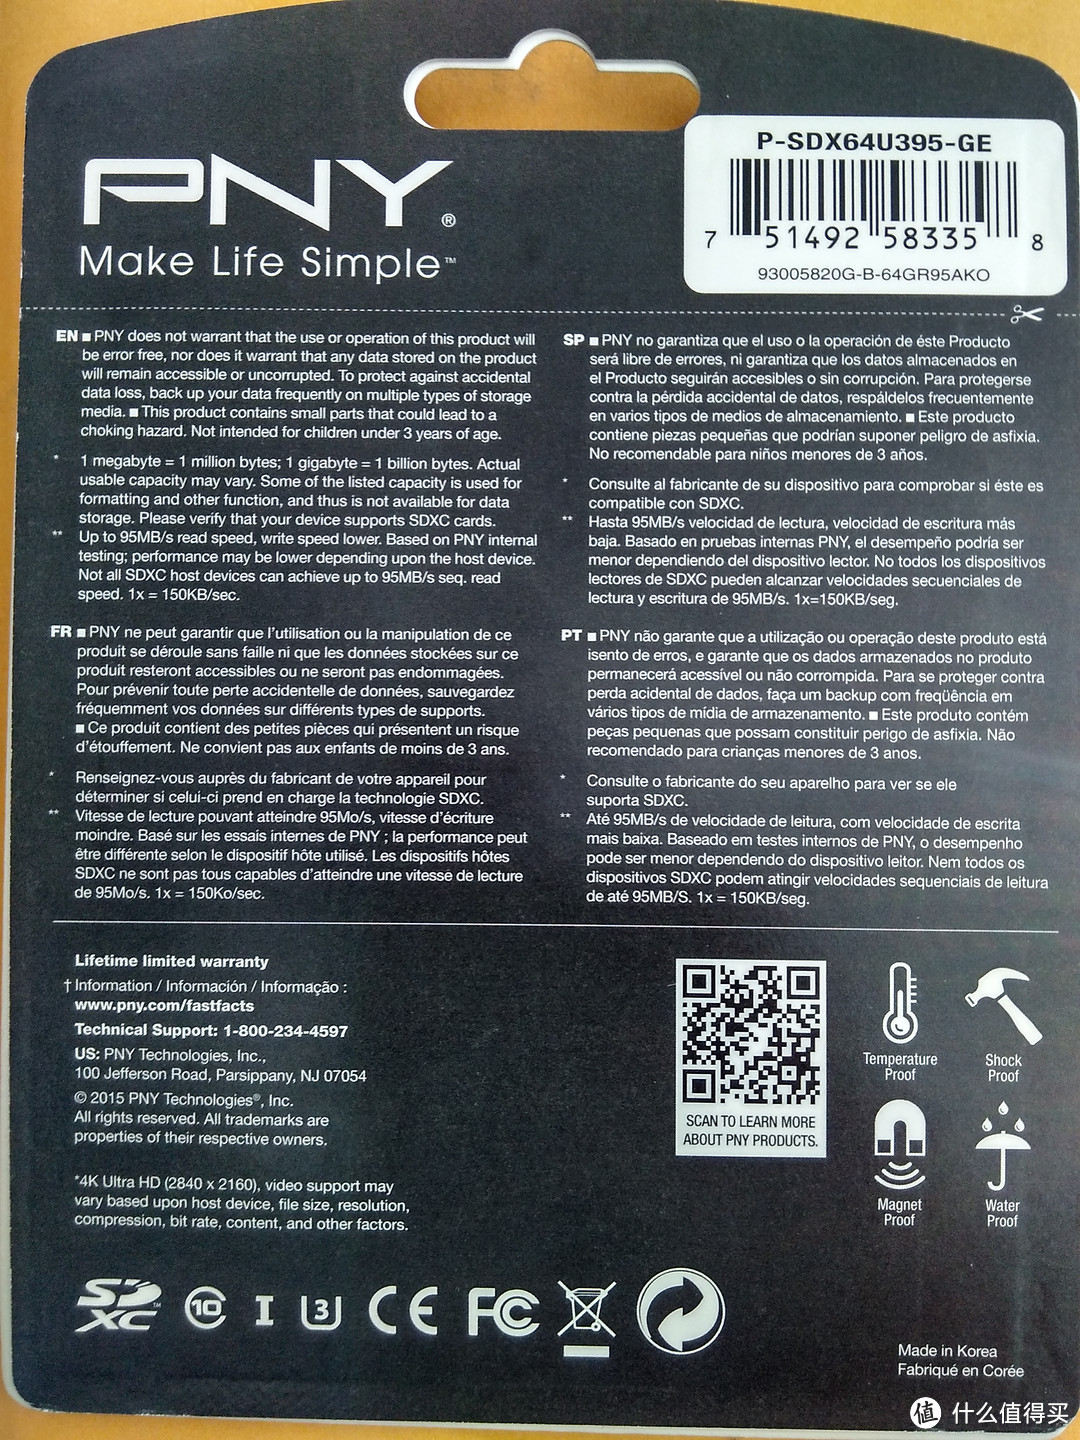 一切为了速度——PNY Elite Performance 64GB SD卡小测